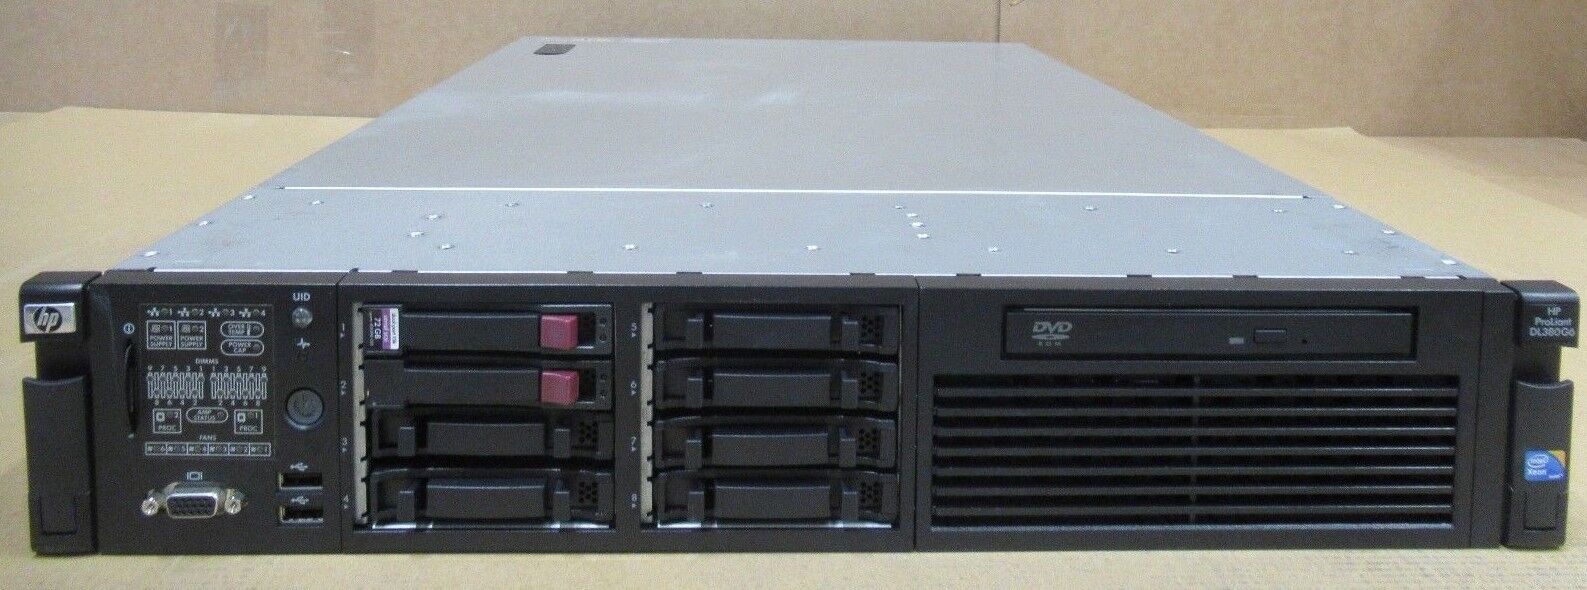 HP Proliant DL380 G6 1x Quad Core Xeon X5550 2.66GHz 72GB HDD 2U Server